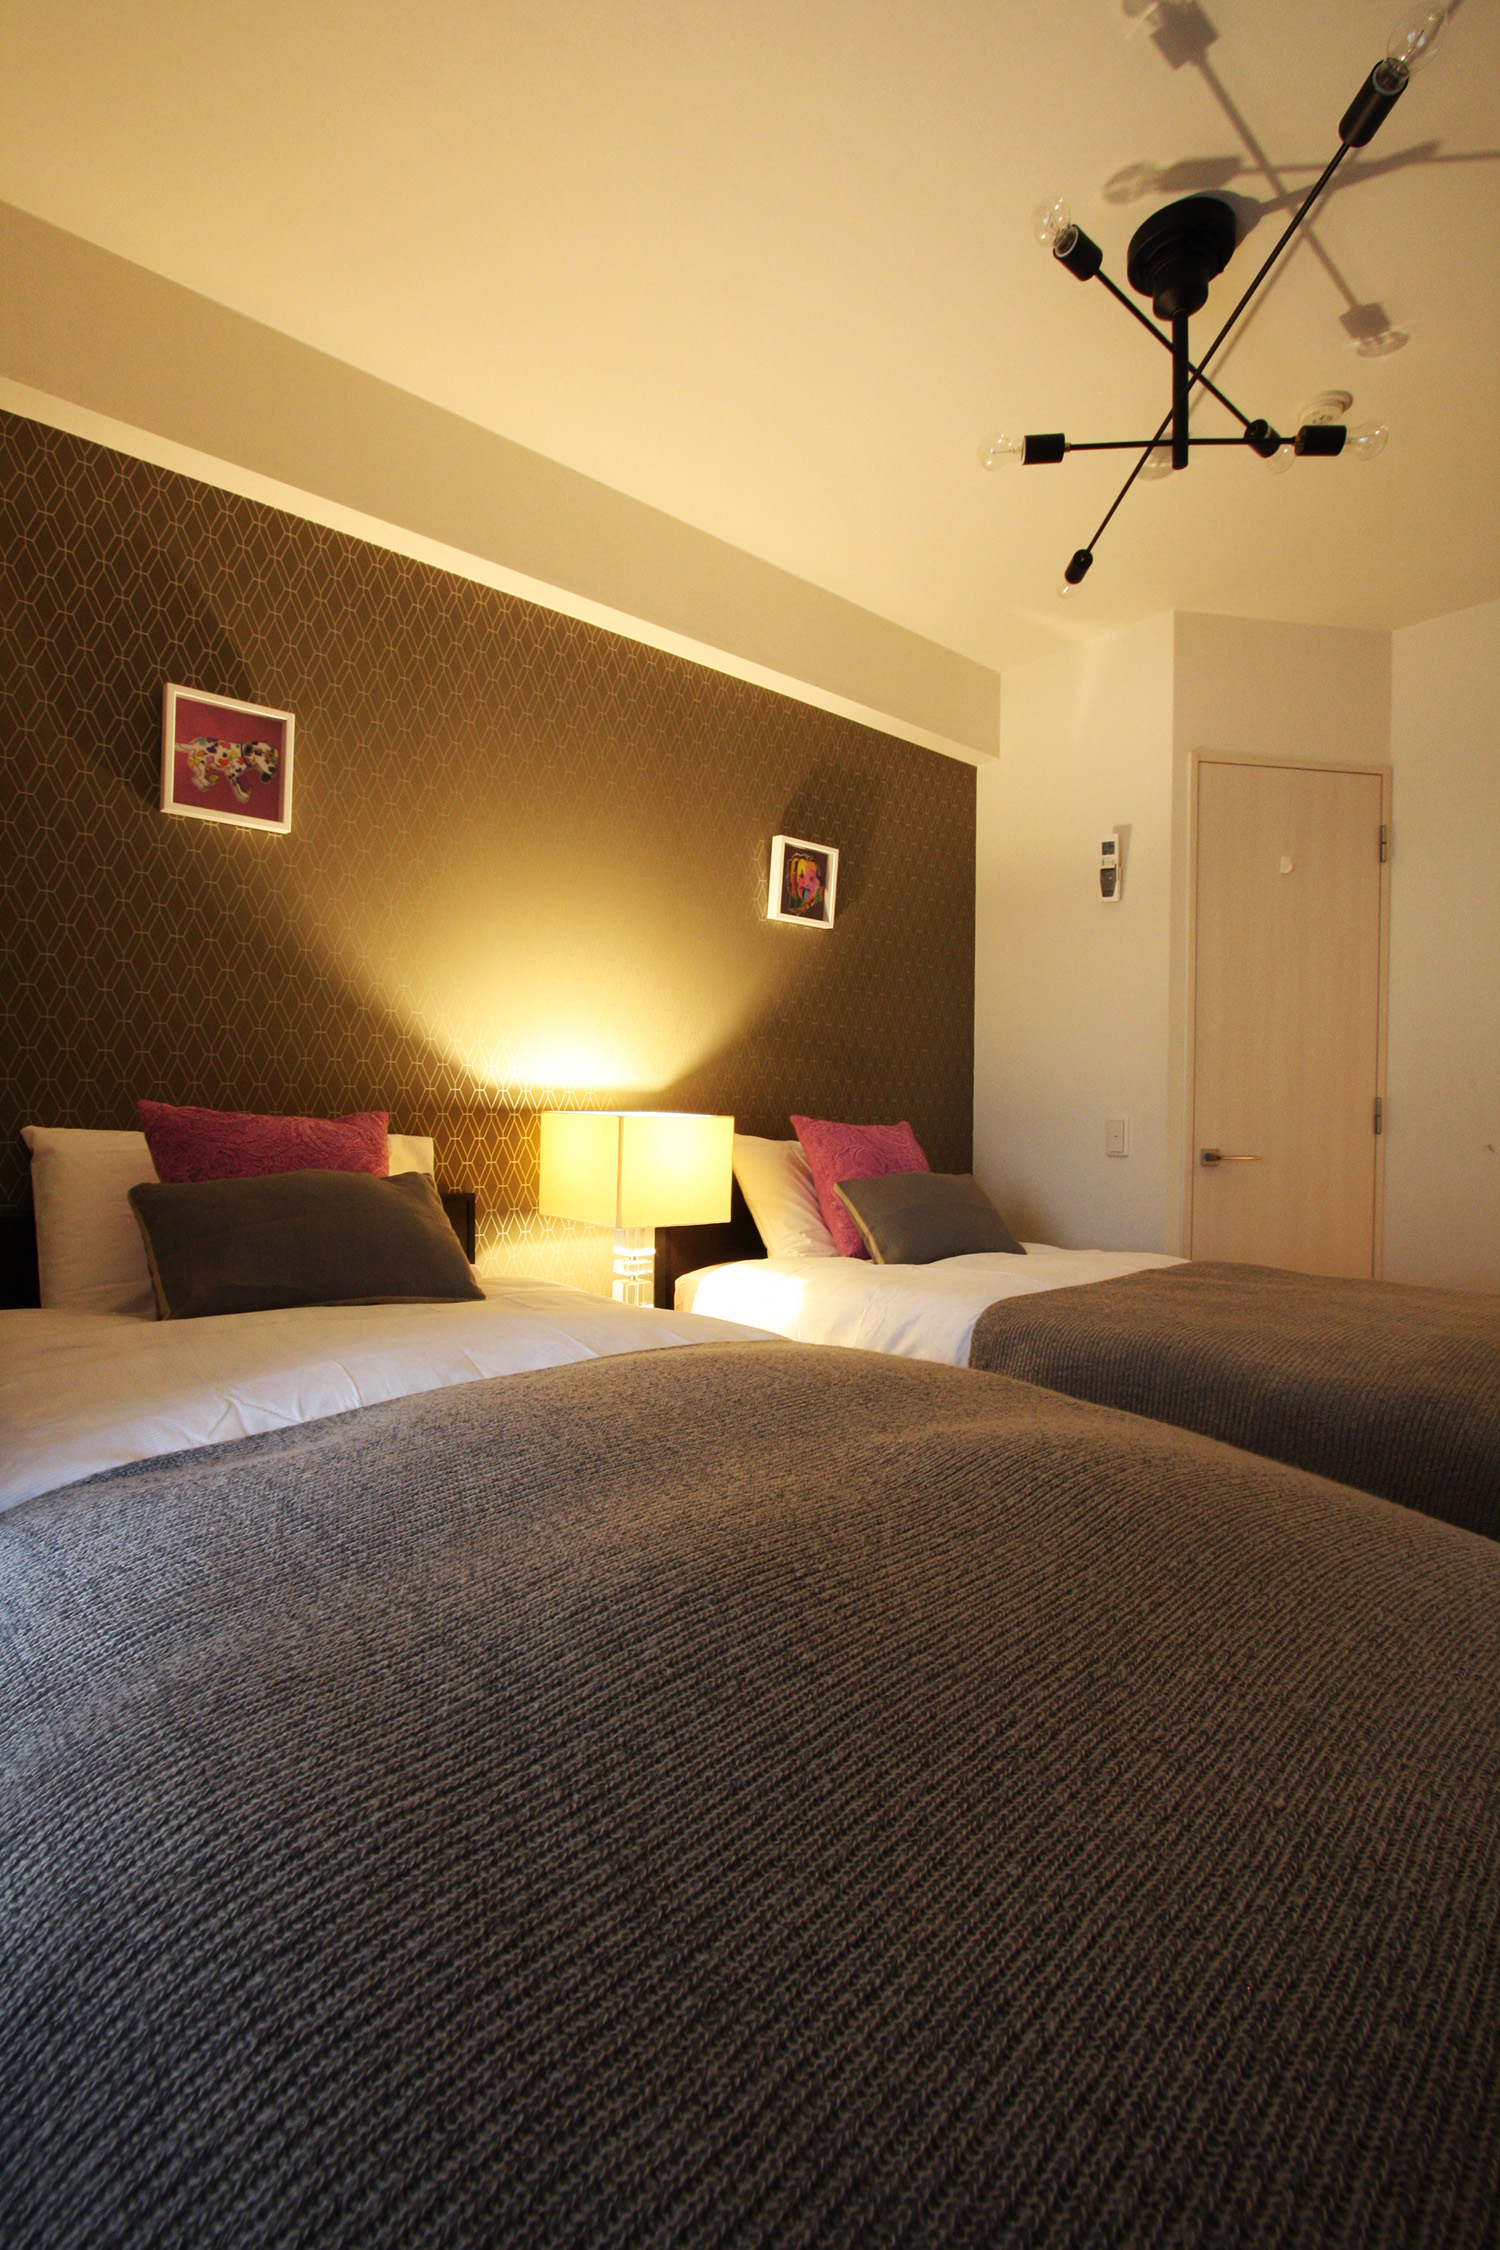 マンション6畳のお部屋が ホテルライクな寝室になる インテリアコーディネーター三宅利佳のブログ